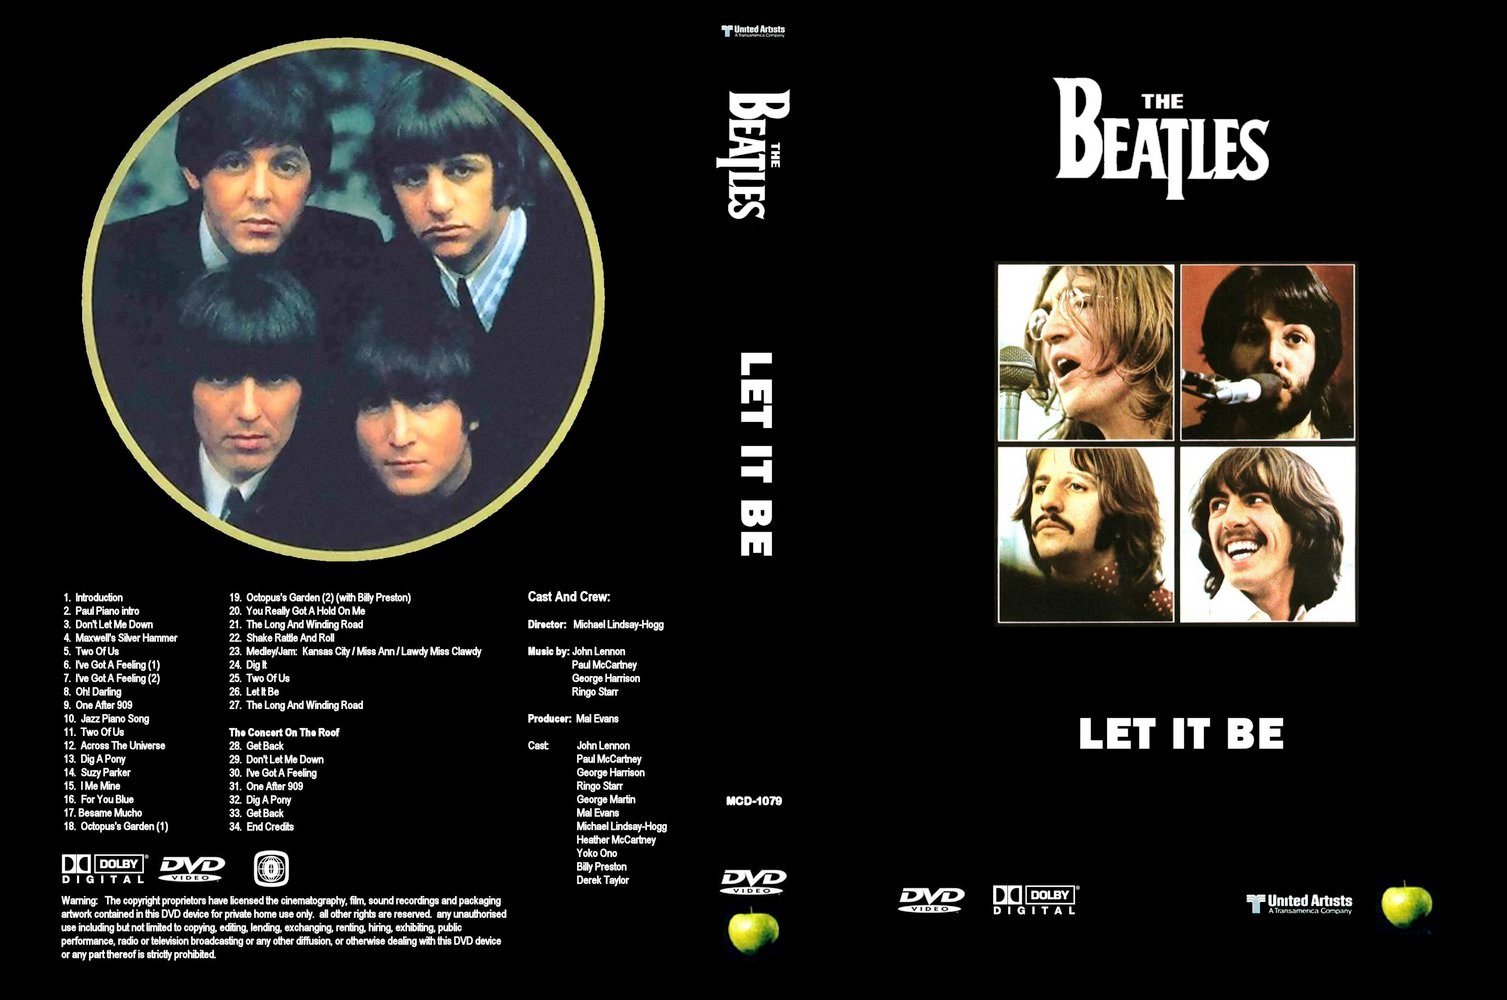 Лет ит би слушать. The Beatles (1970) - Let it be японская обложка диска. The Beatles Let it be 1970 обложка. The Beatles Let it be DVD. The Beatles обложка для диска.